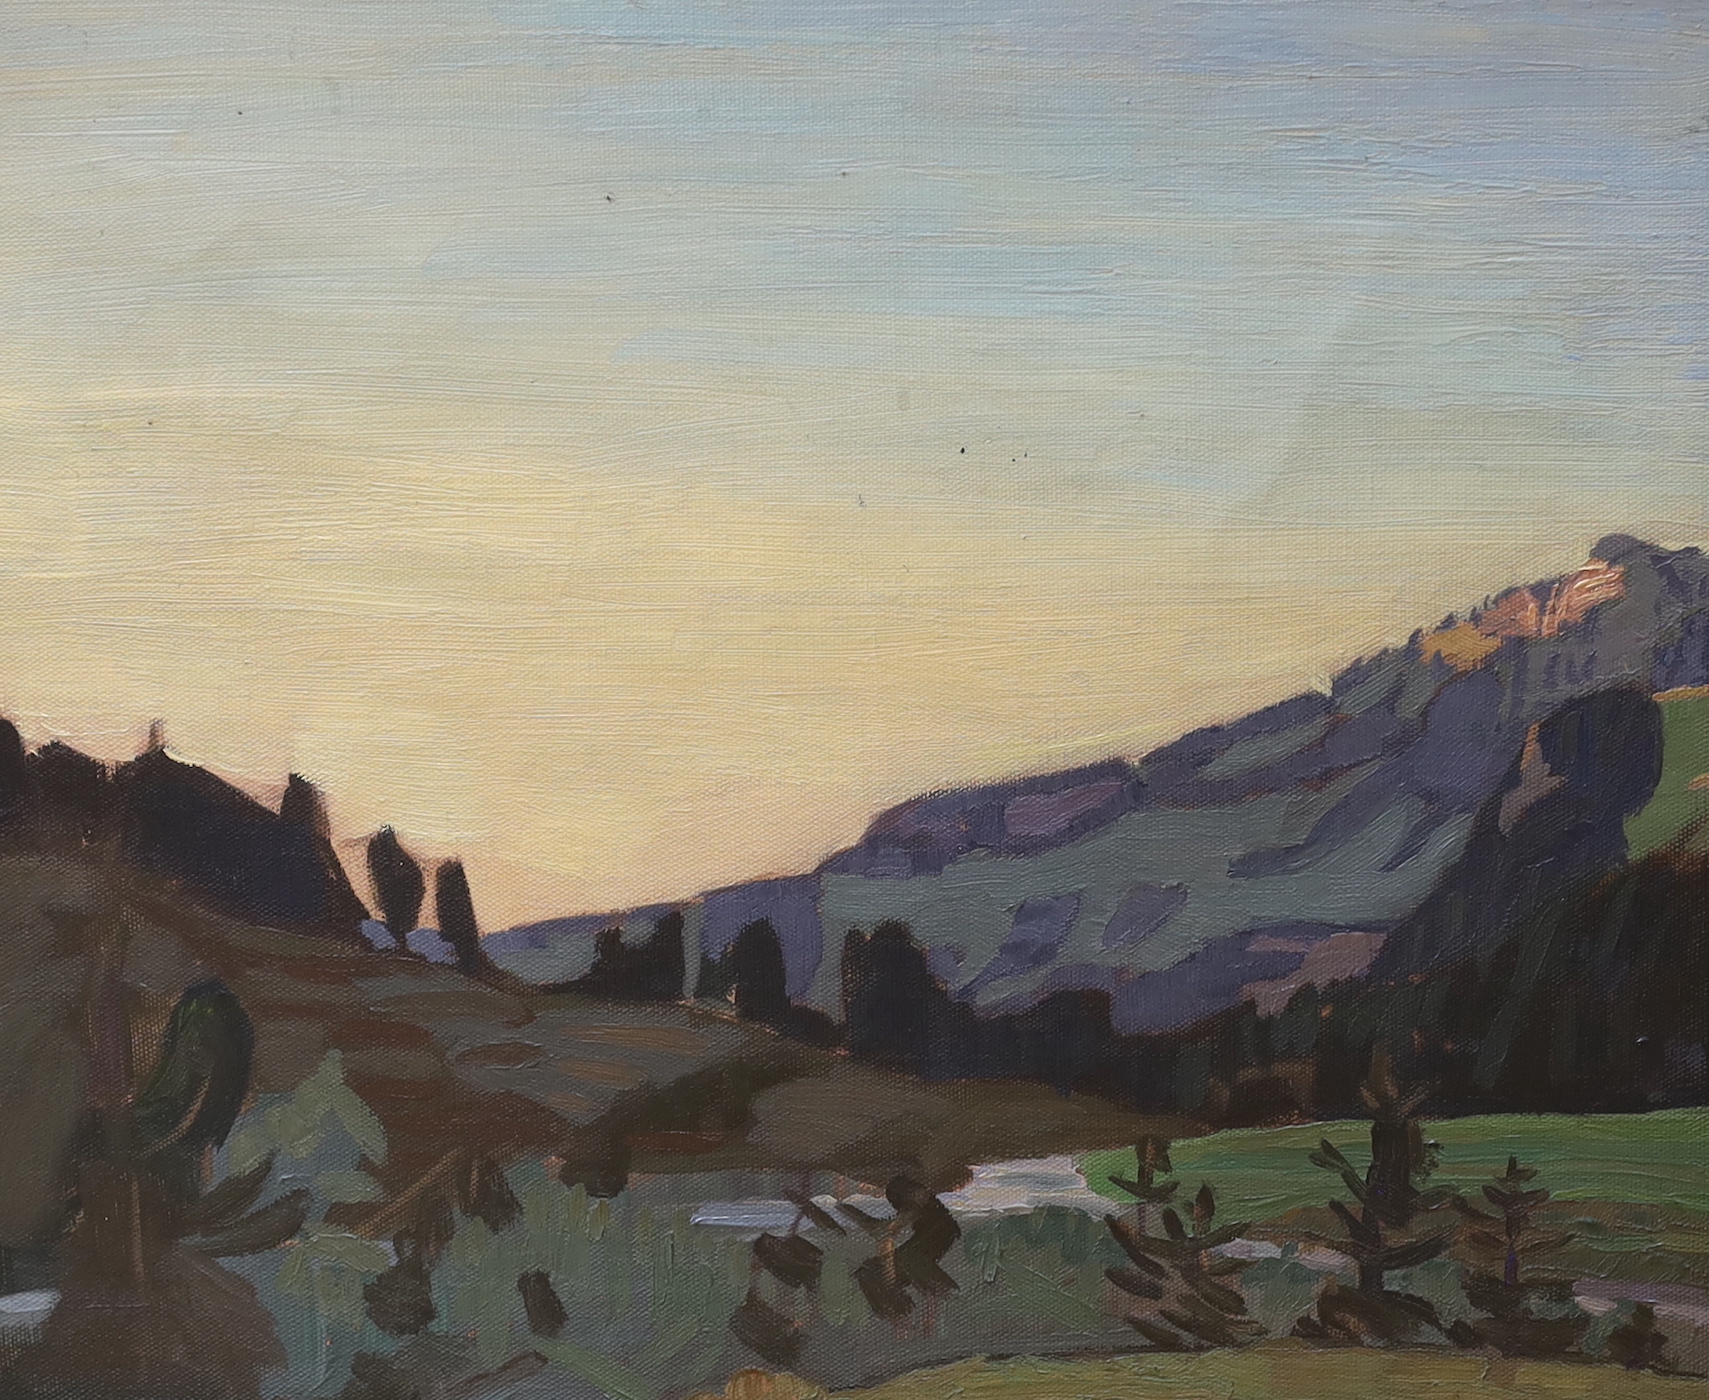 Karl Reber (1870-1931), oil on canvas, Mountainous landscape, 'Razliapl', unsigned, details verso, 46 x 55cm